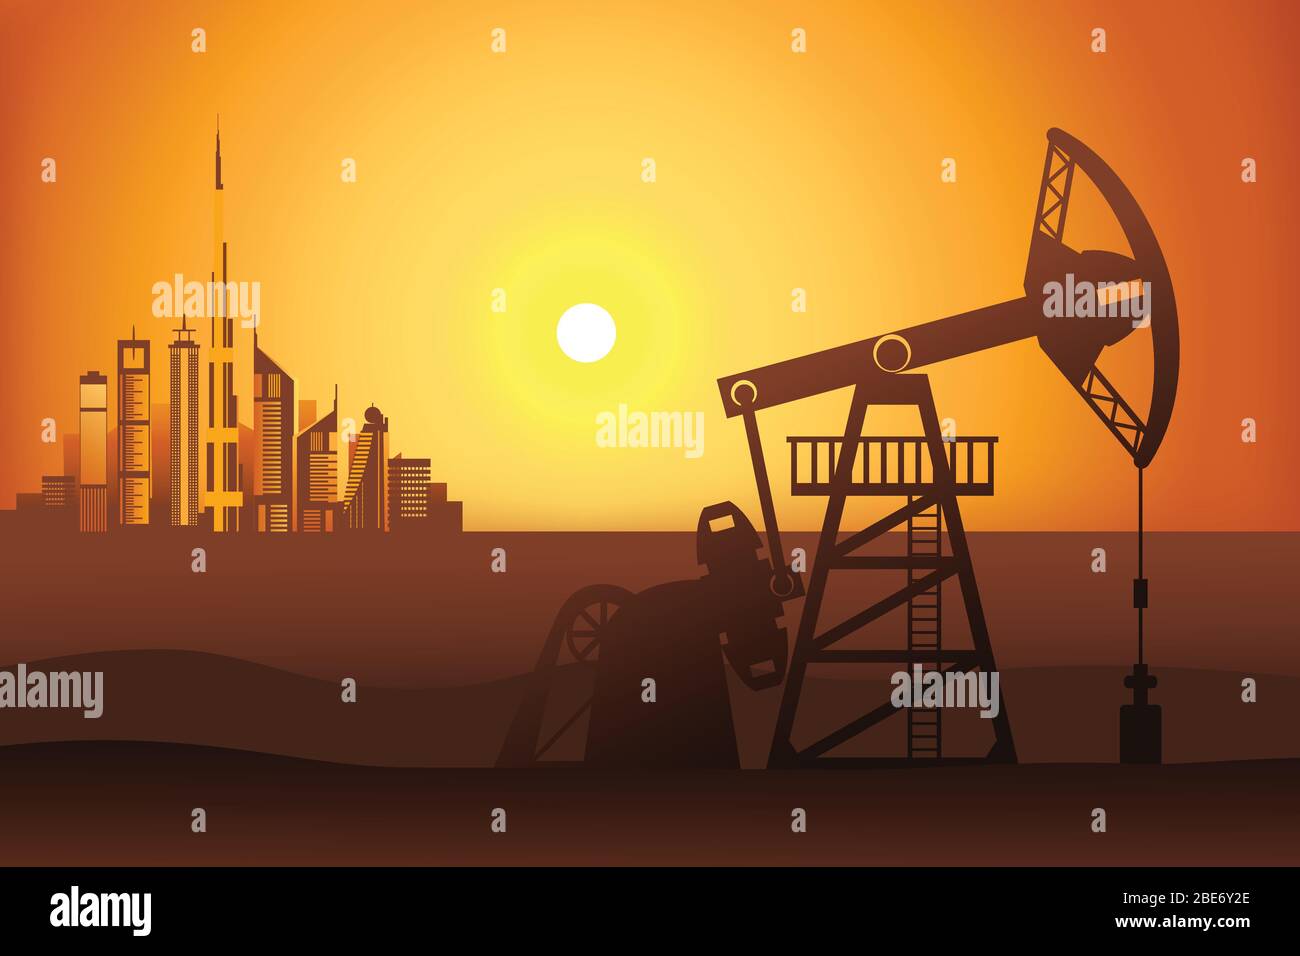 Ölbrunnen bei Sonnenuntergang in der Wüste auf der Dubai Stadt Hintergrund Vektor-Illustration. Petroleum Pumpjack Silhouette. Stock Vektor